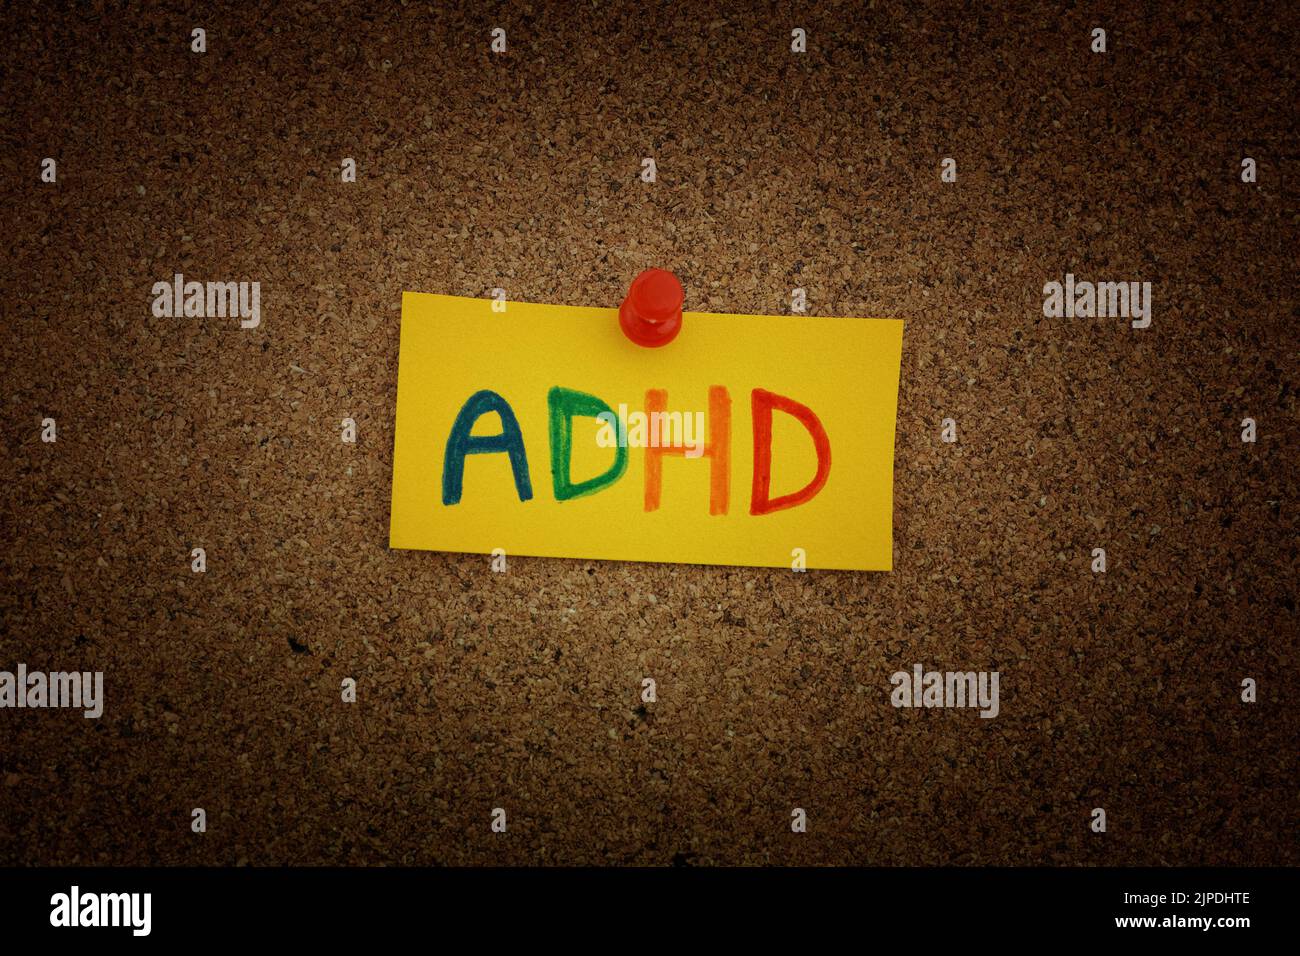 Una nota di carta gialla con l'abbreviazione ADHD su di essa fissata a una tavola di sughero. Primo piano. L'ADHD è un disturbo da deficit di attenzione e iperattività. Foto Stock